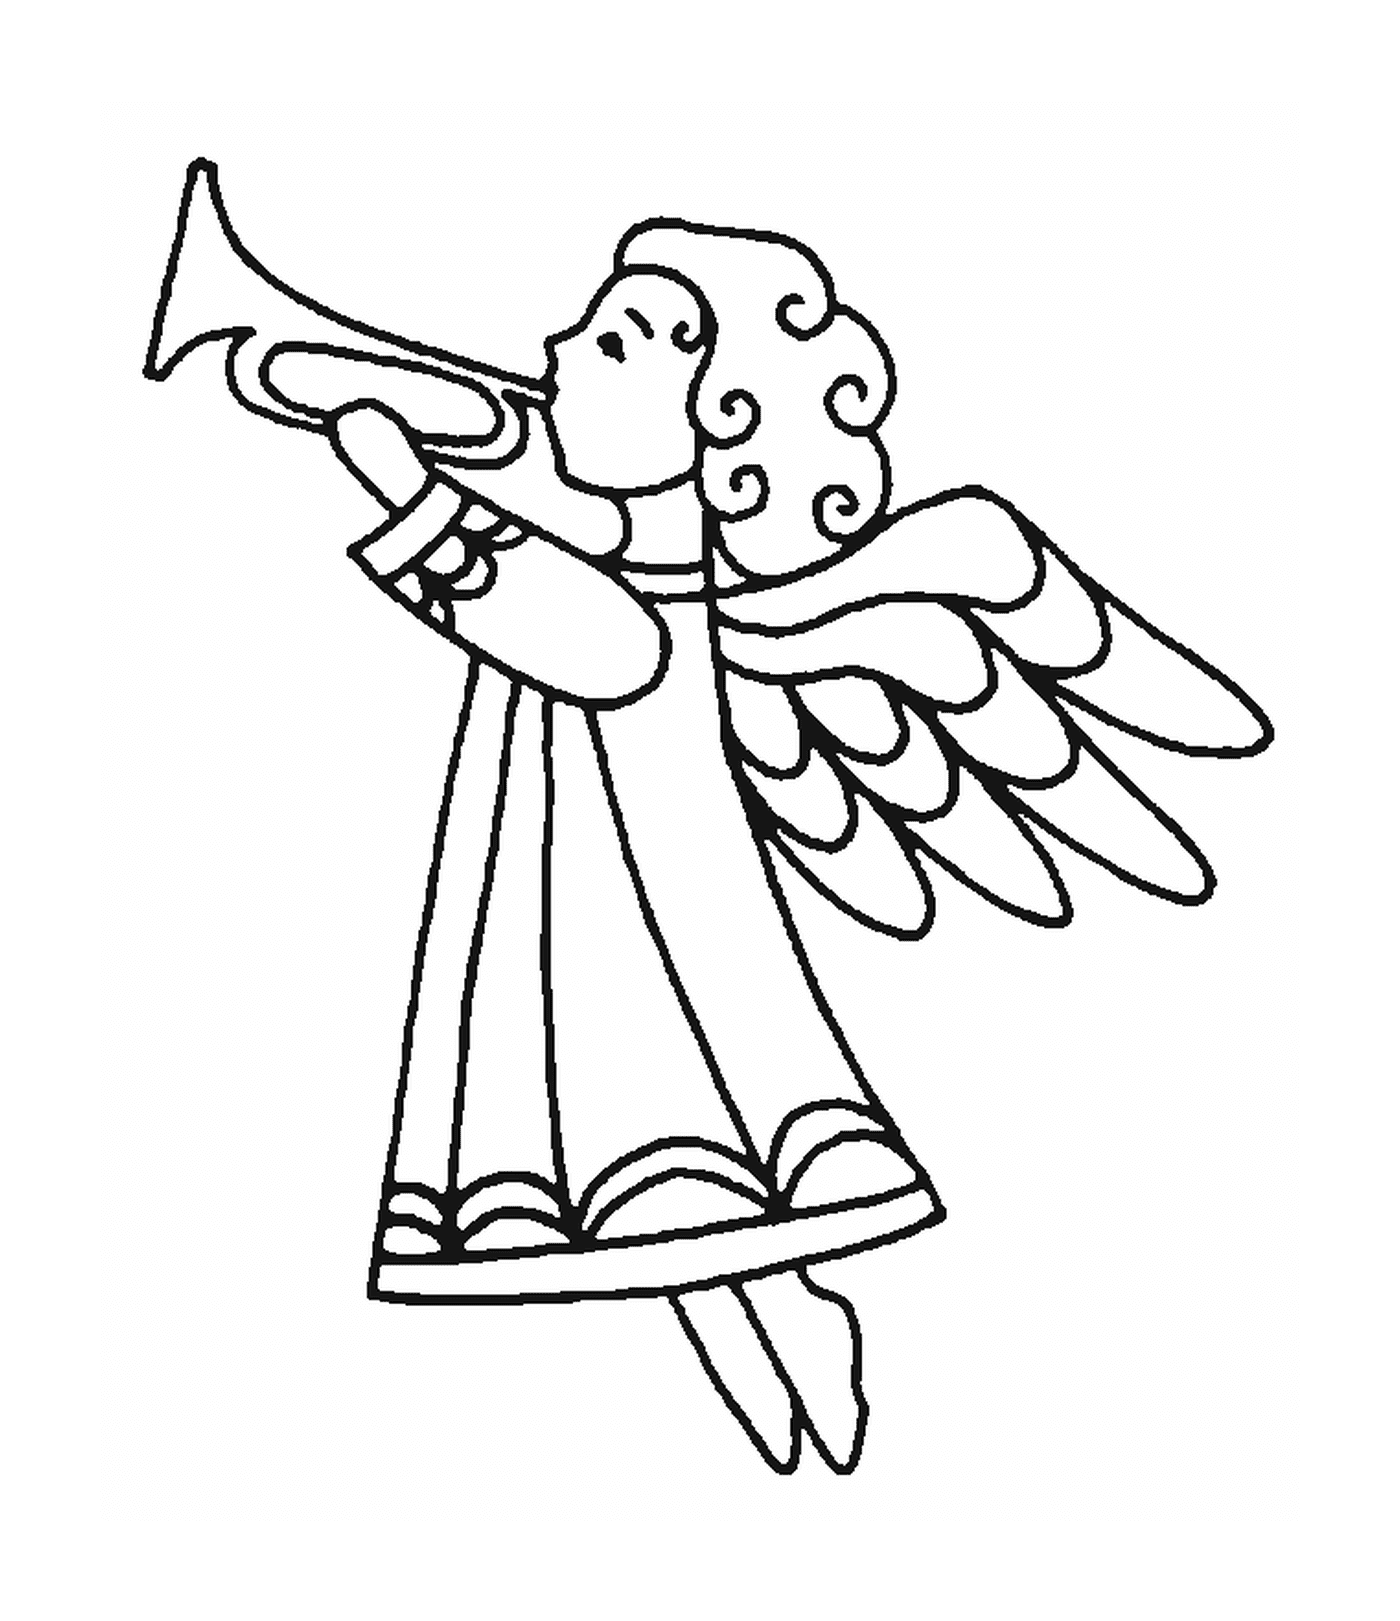  Um anjo tocando a trombeta 